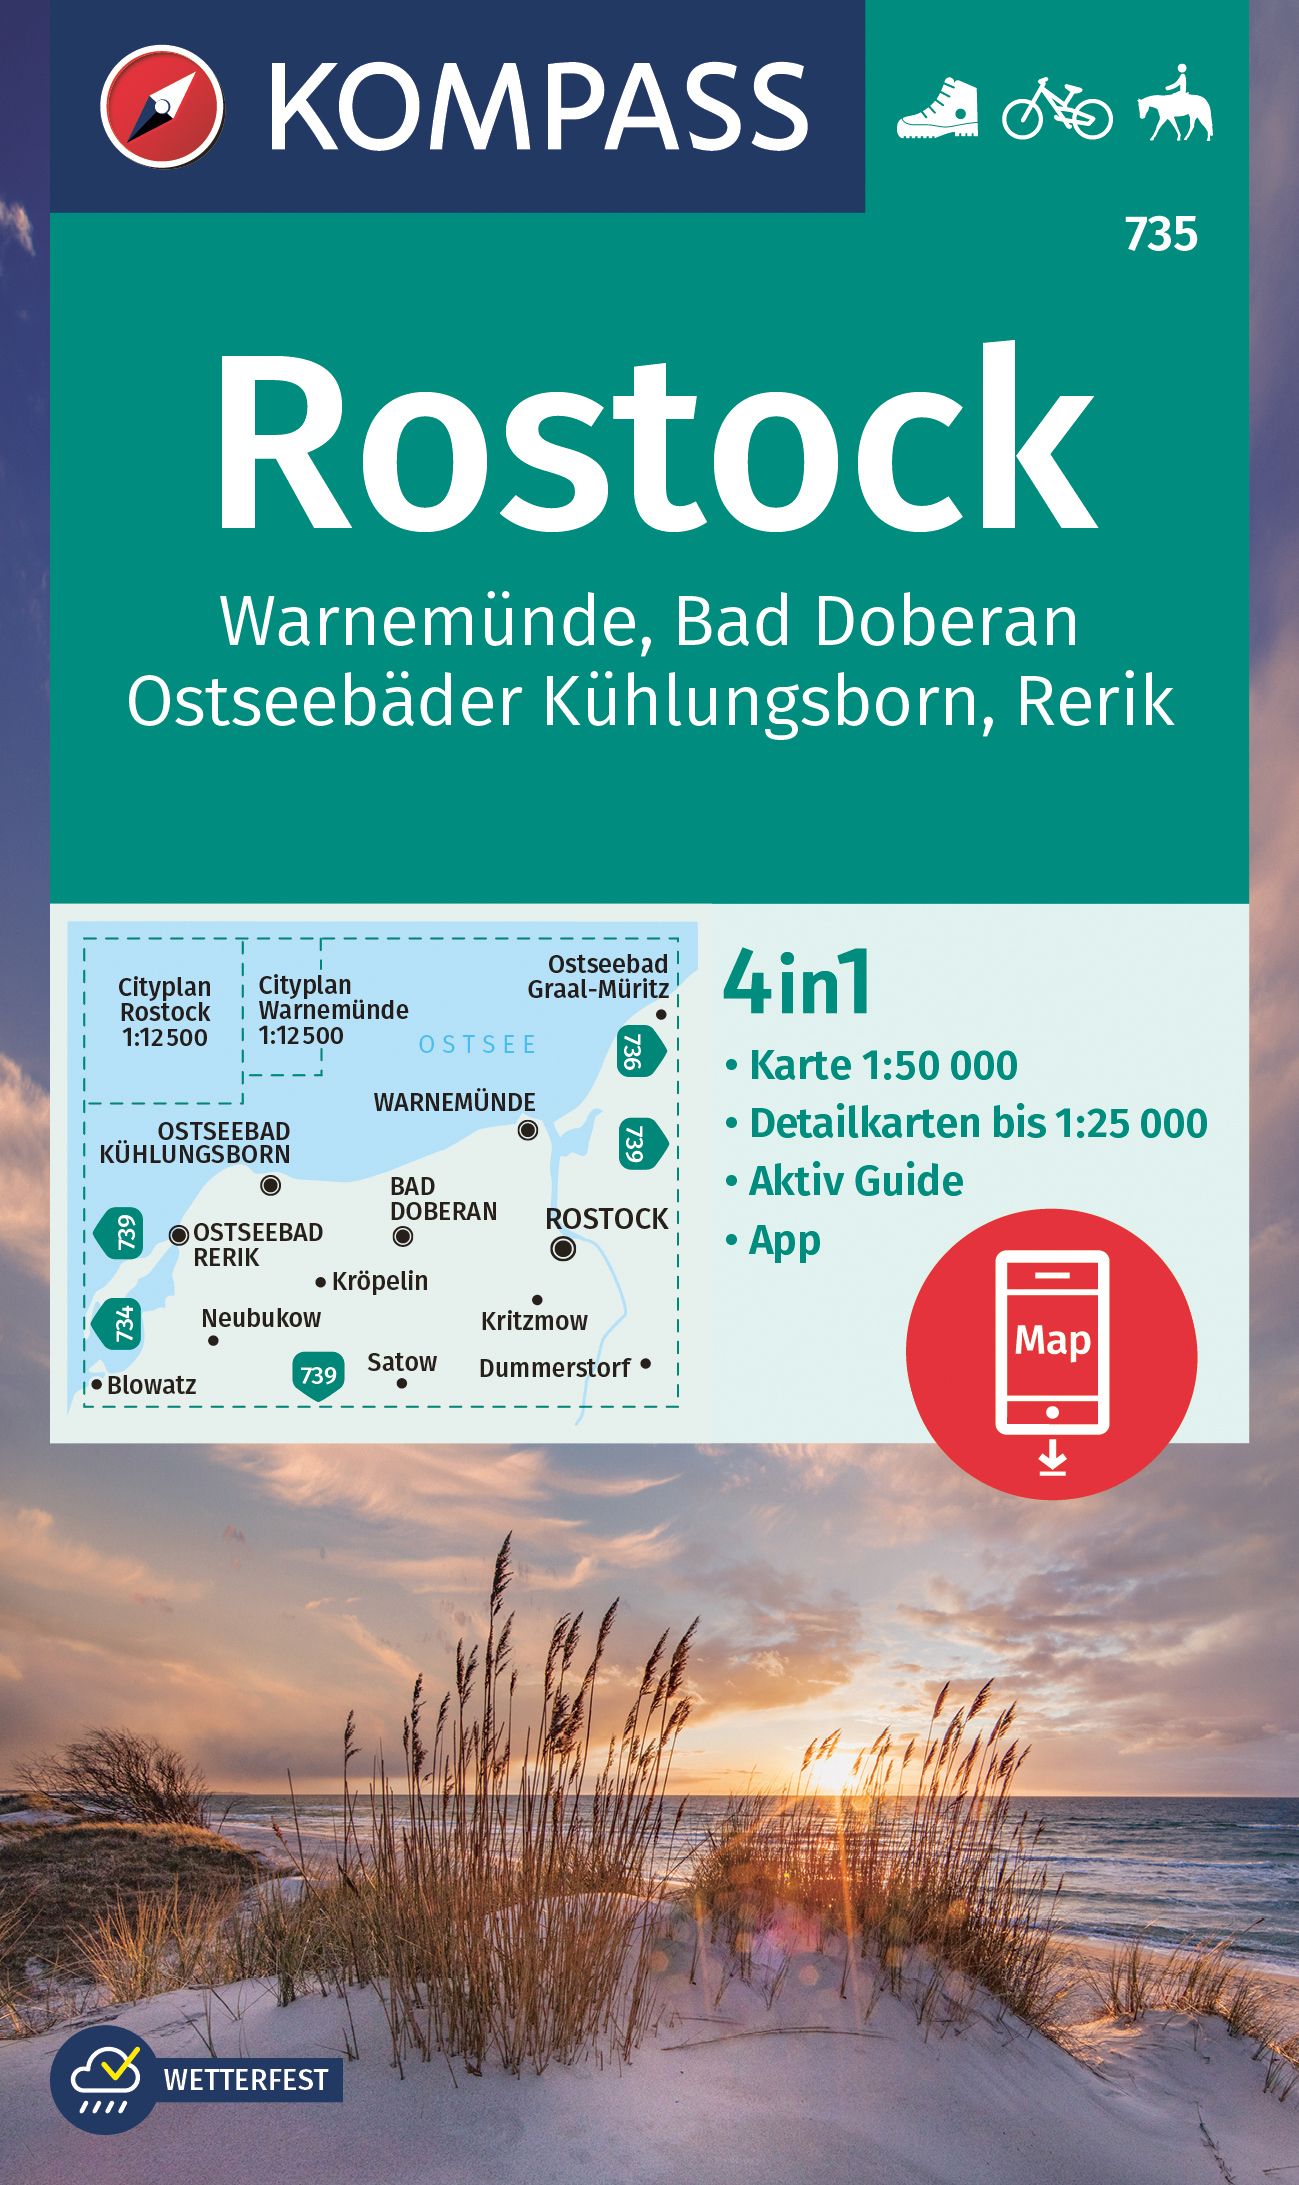 Kompass Rostock-Warnemünde-Bad Doberan-Rerik 1:50 t.